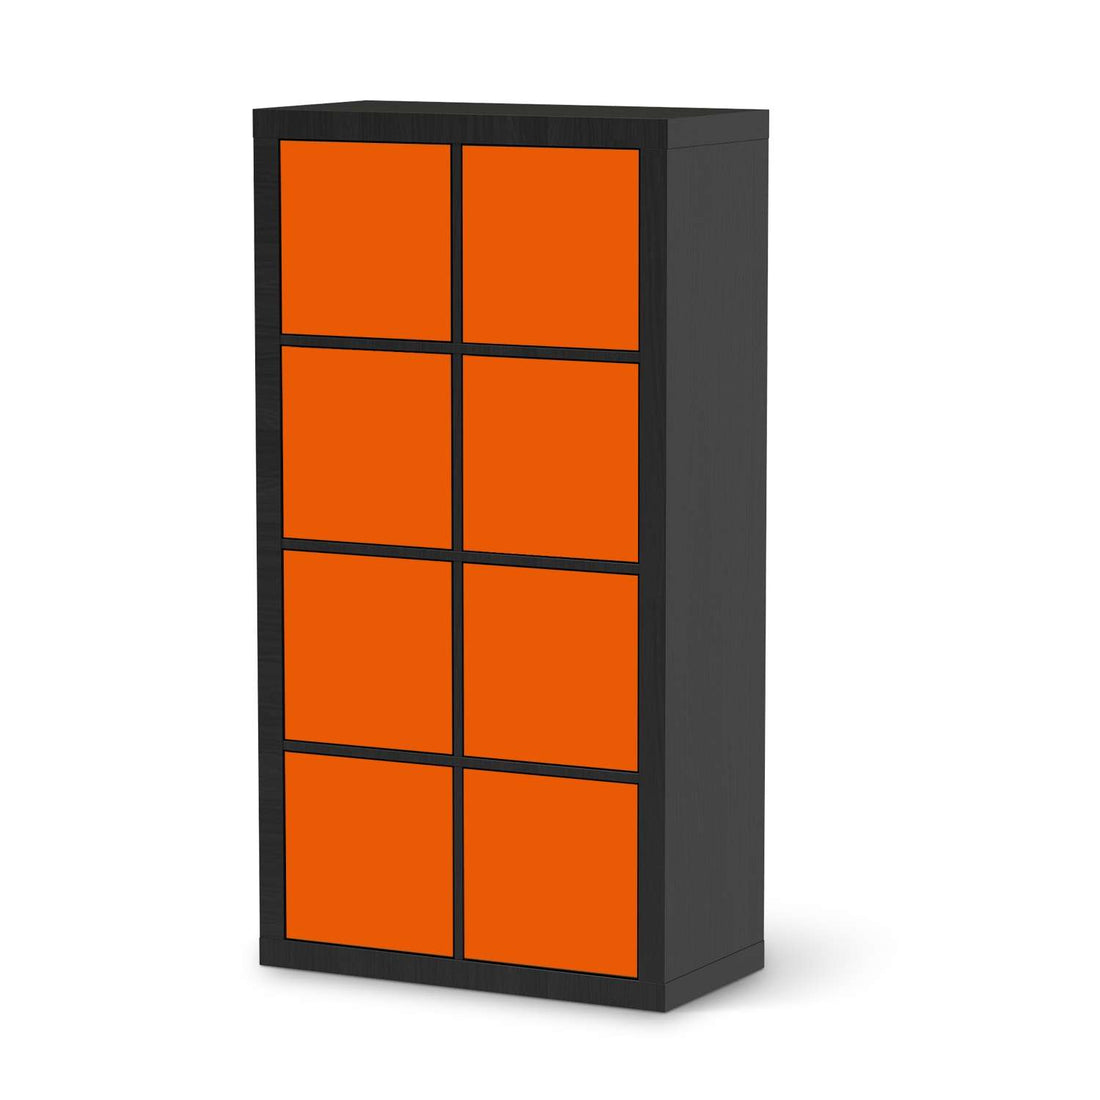 Folie für Möbel Orange Dark - IKEA Kallax Regal 8 Türen - schwarz